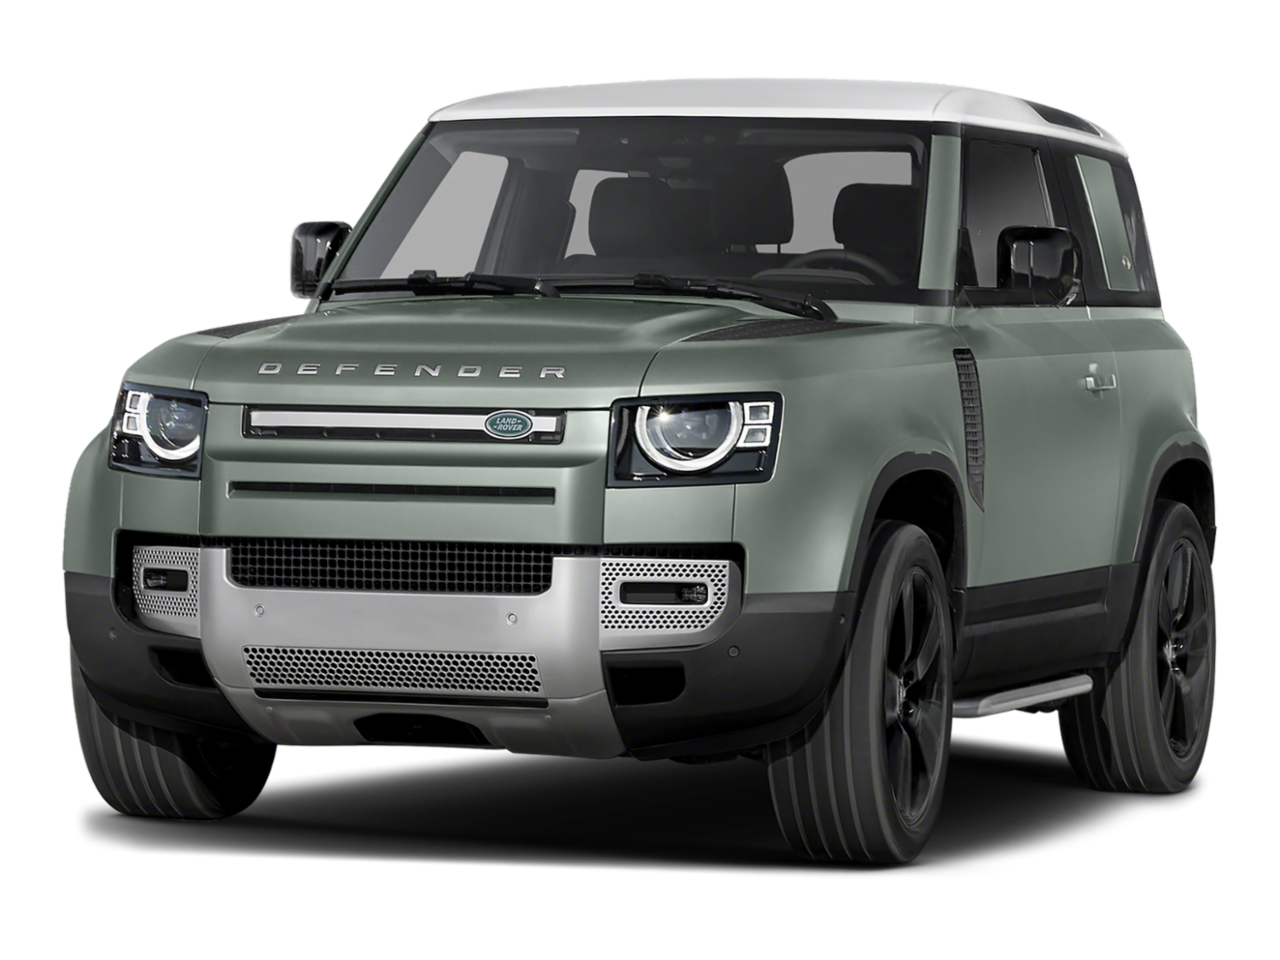 Land Rover Defender Transparent Images